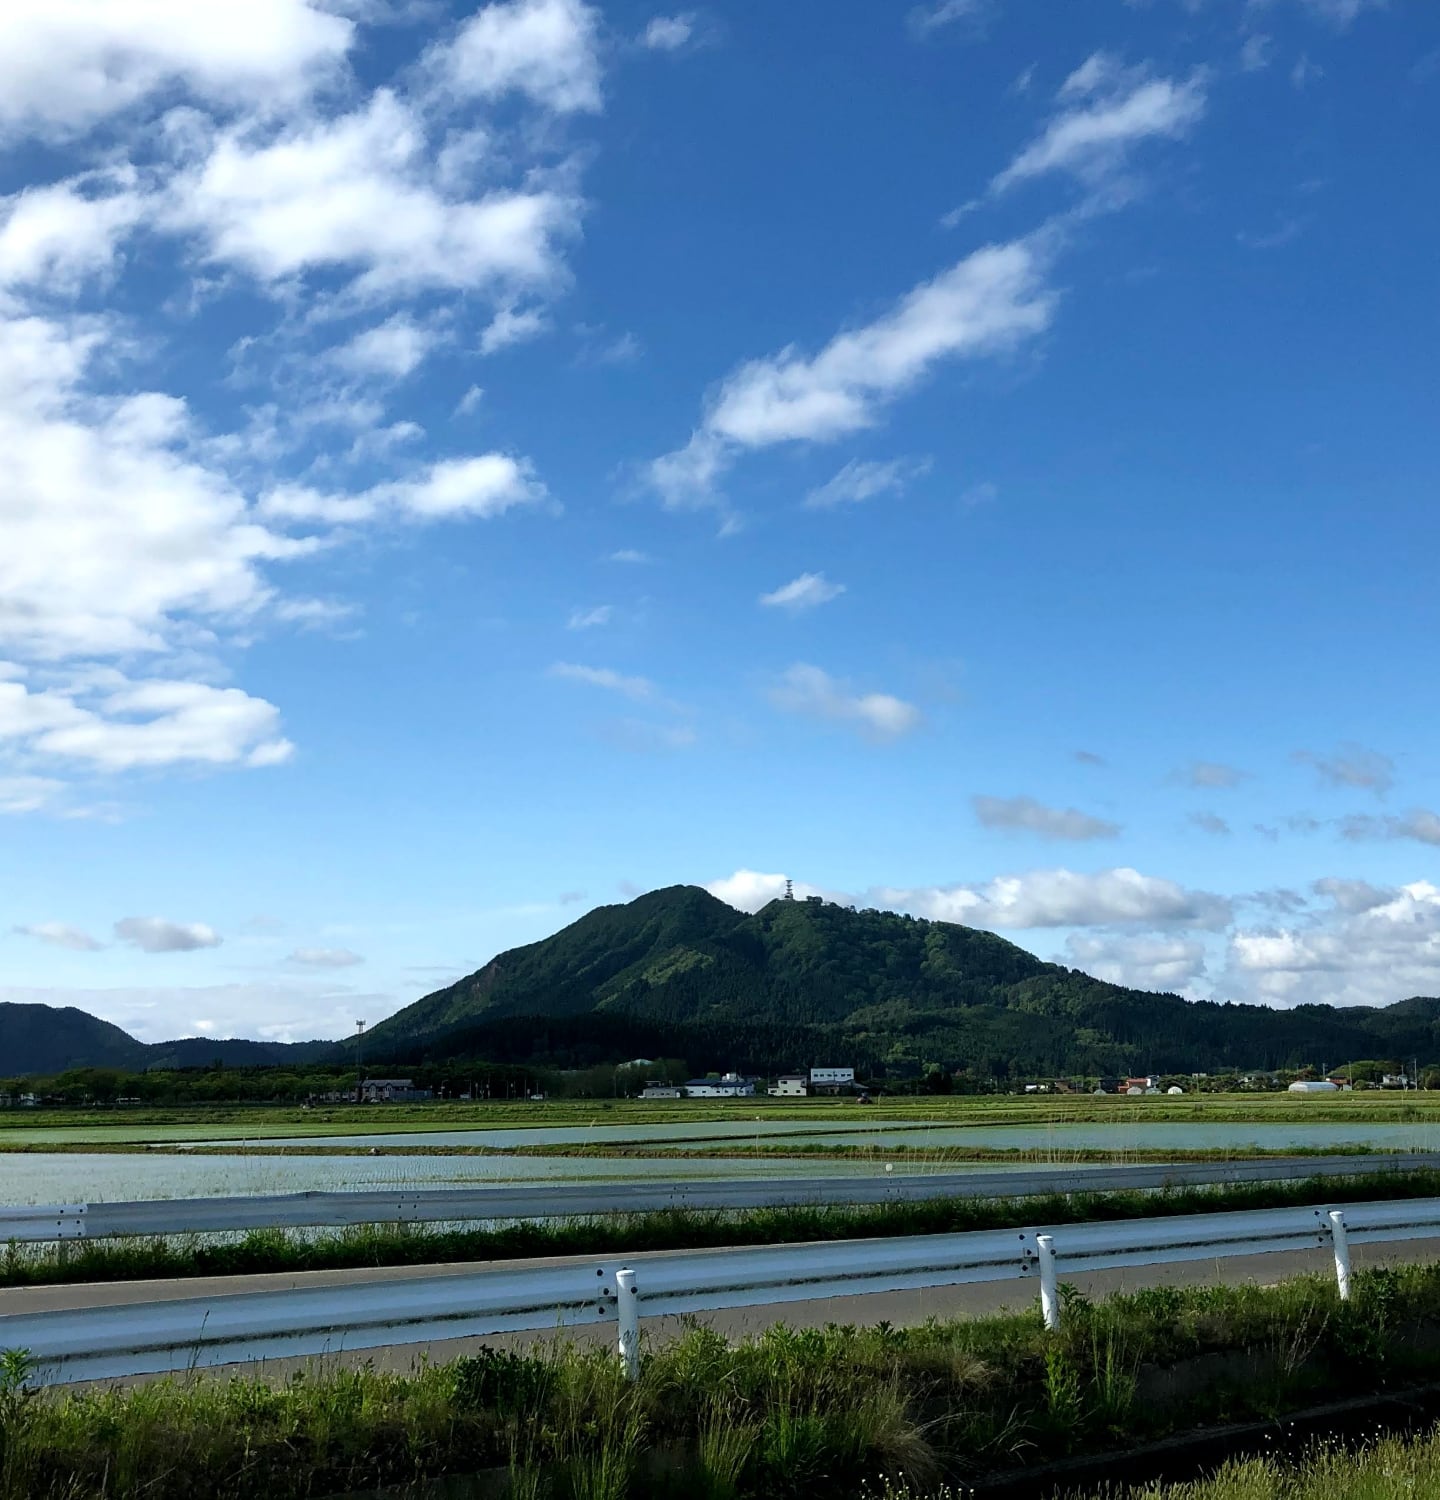 migakiba gojomeのイメージ写真。青々とした五城目町の森山の上には希望の塔、森山の麓には田園風景が広がっています。